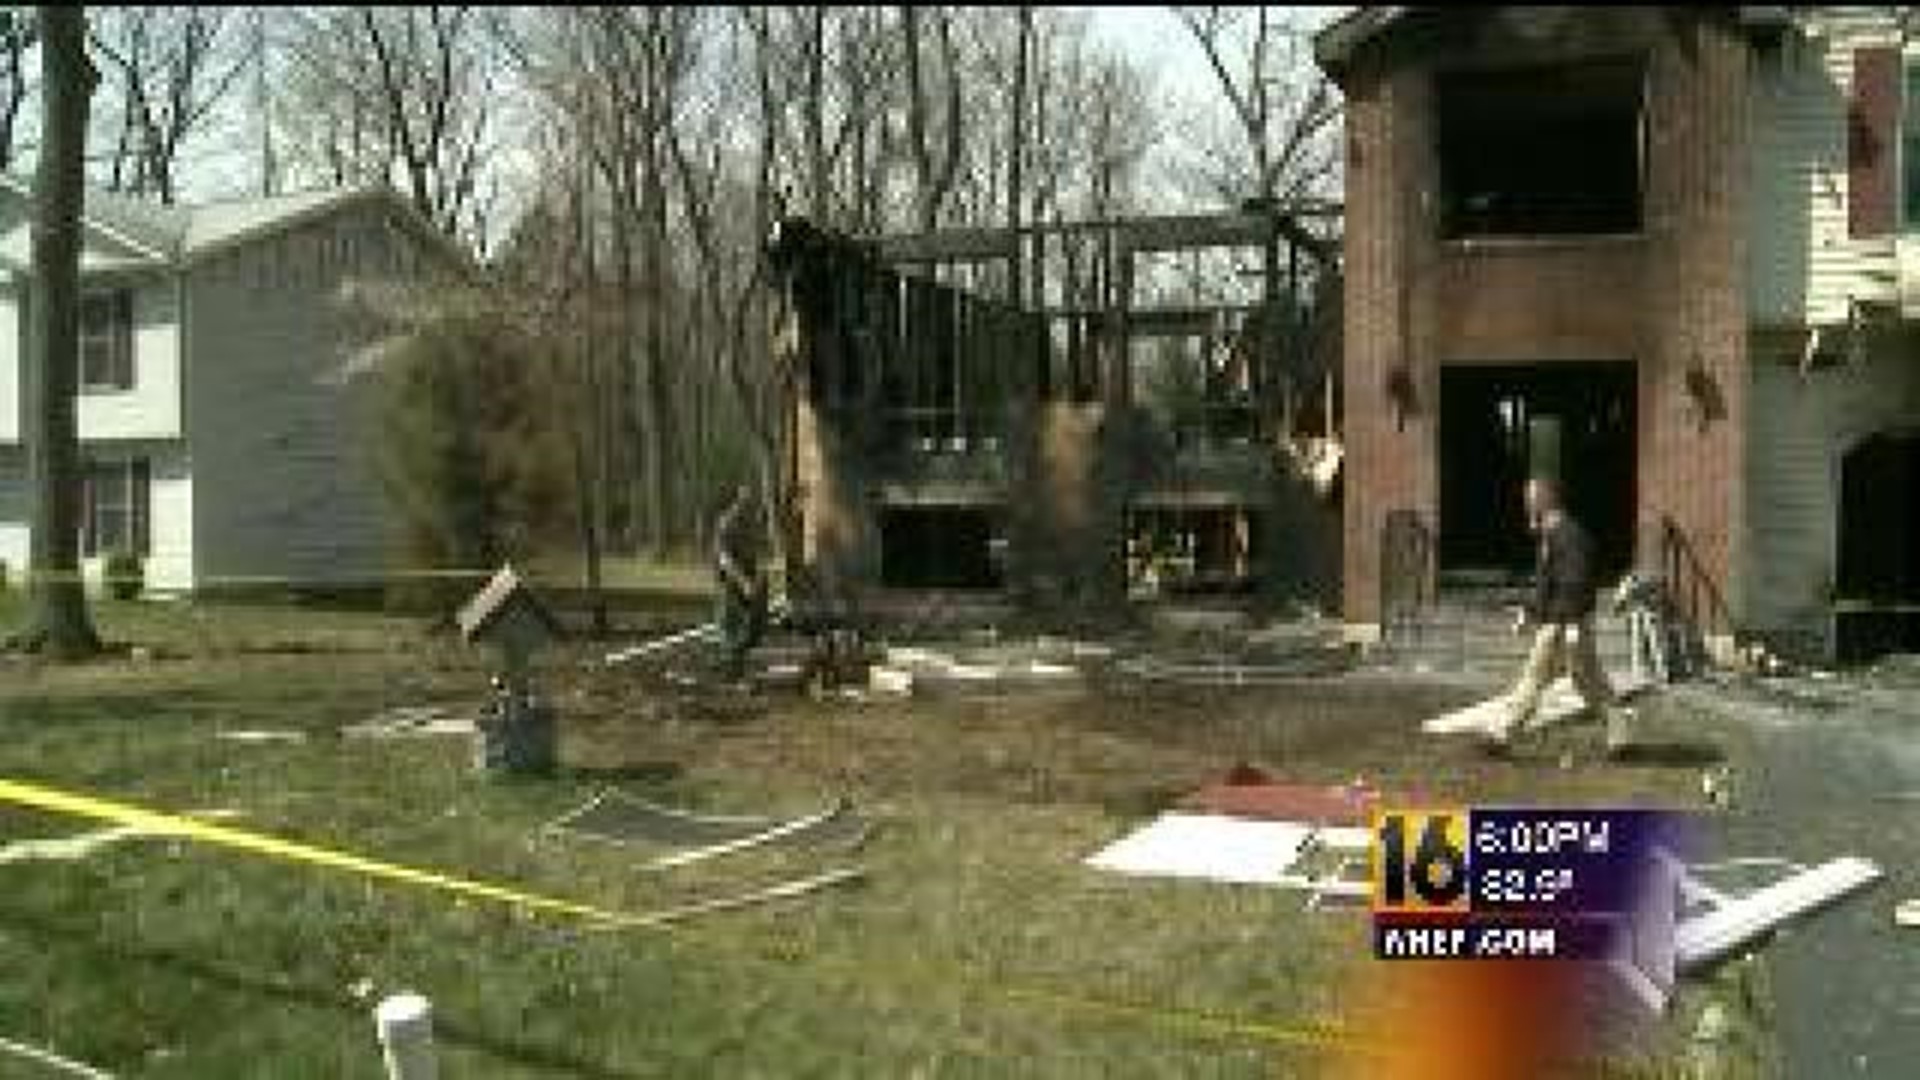 Neighbors in Disbelief Over Pair of Fires